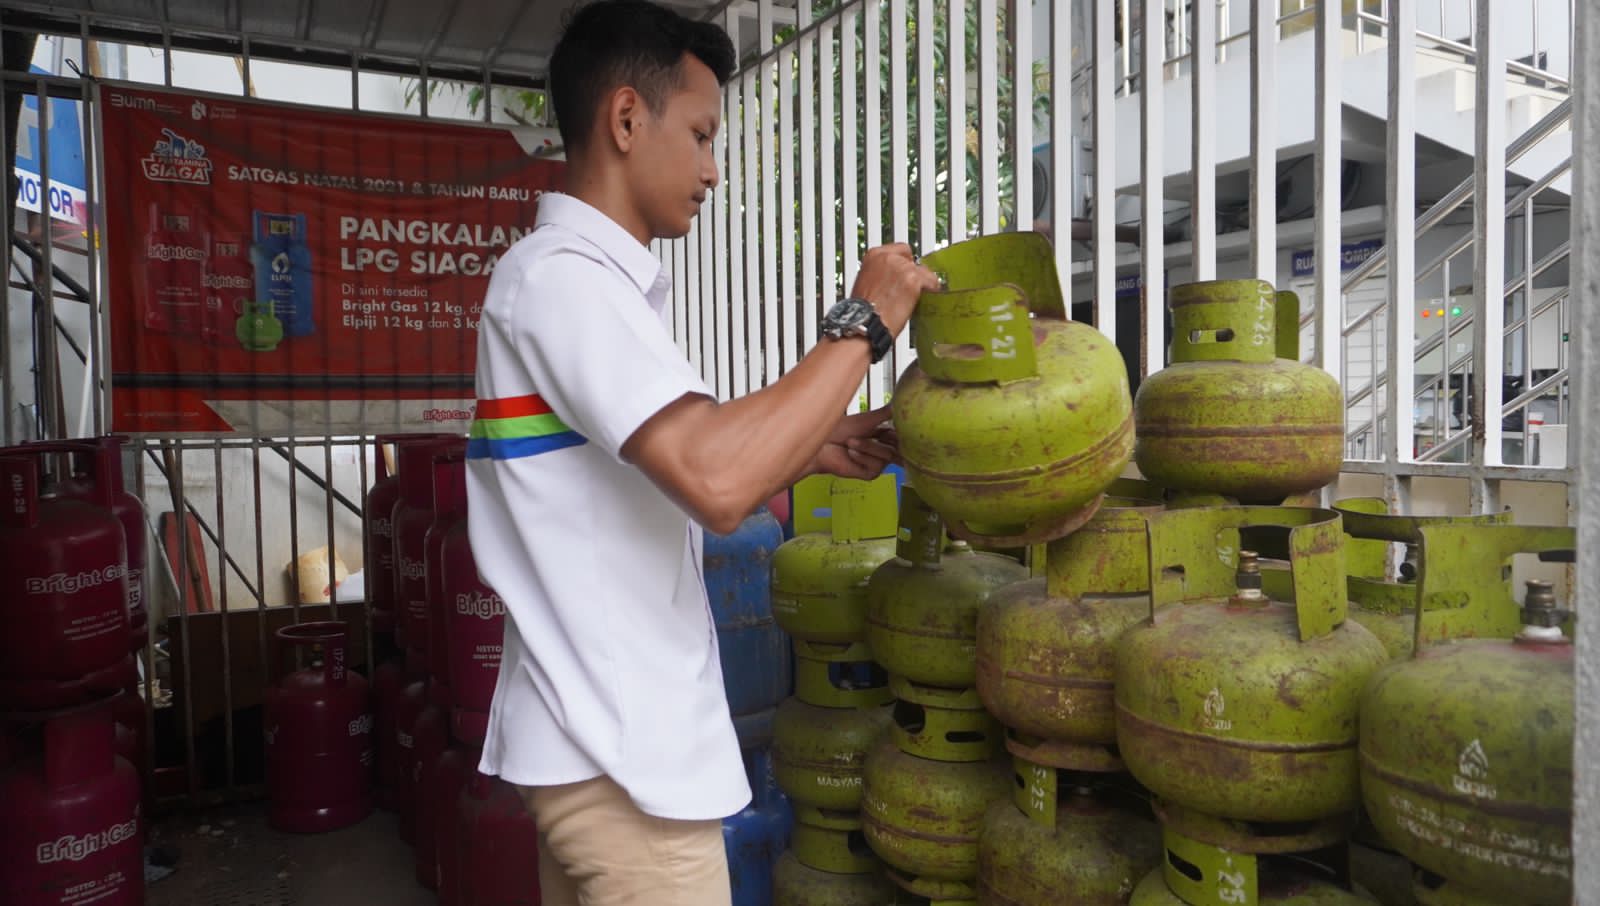 Pertamina Patra Tambah Pasokan LPG 3 Kg di Semarang